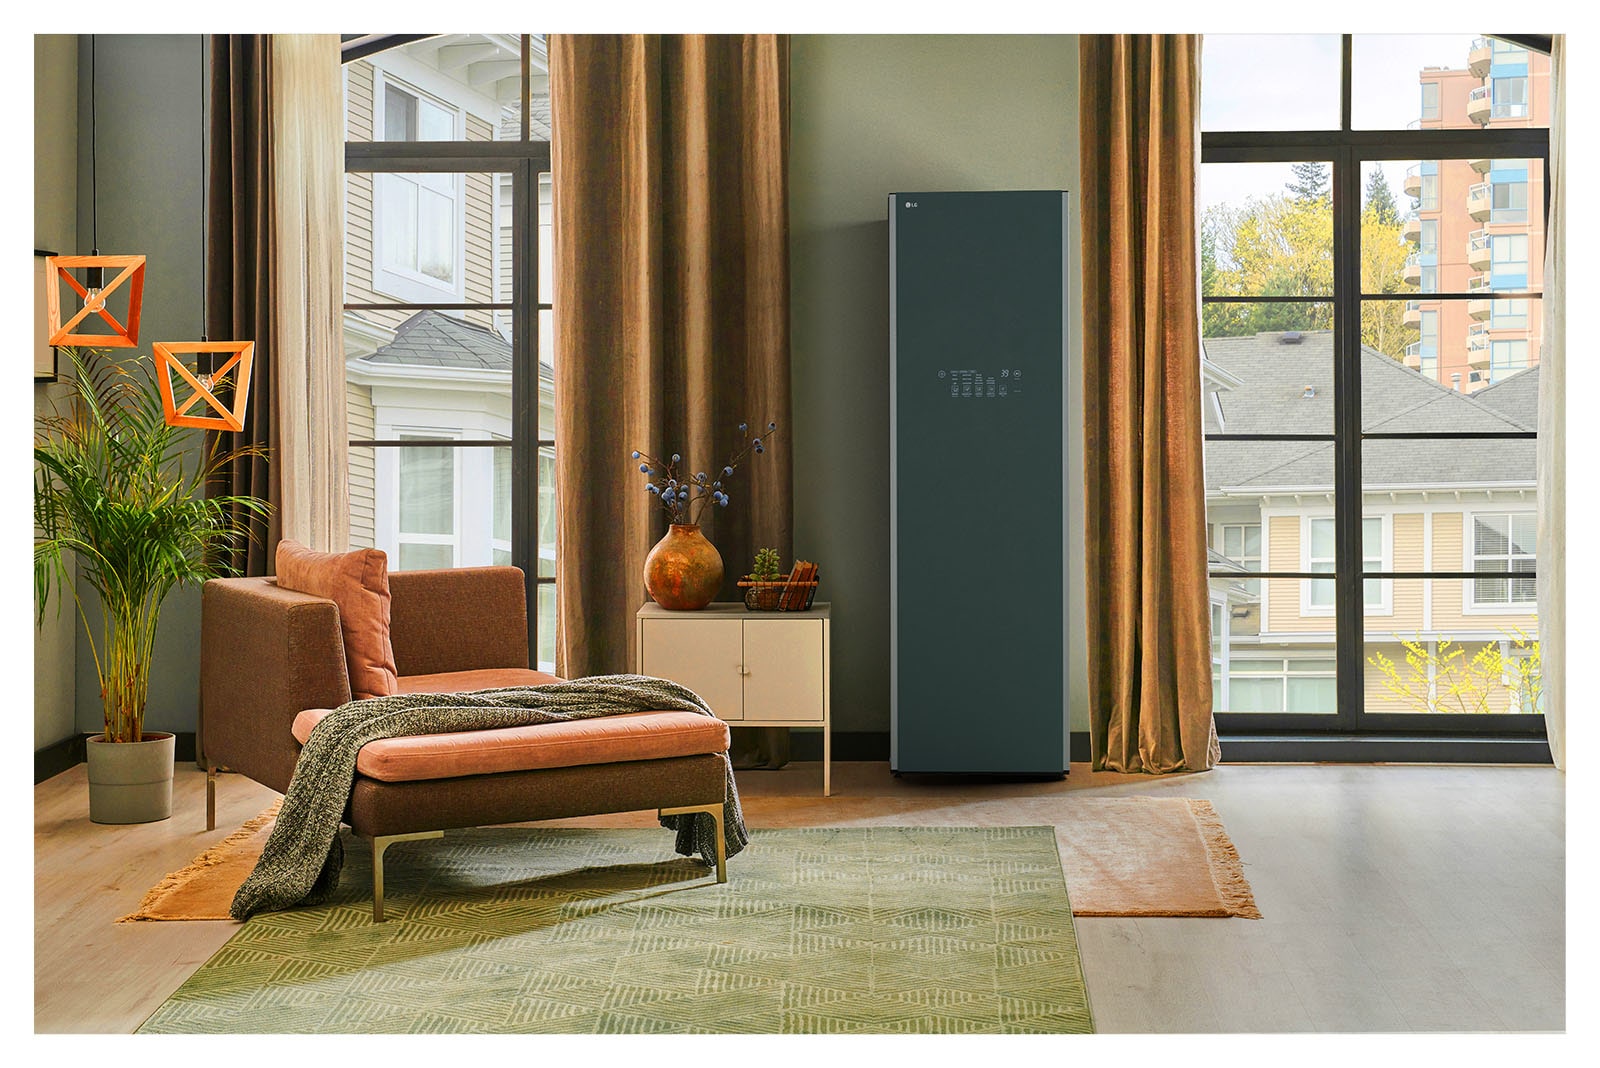 Hình ảnh tủ chăm sóc quần áo LG Styler Objet Collection màu xanh lá cây sương mờ đặt trong phòng thay đồ và hòa hợp một cách tự nhiên với đồ nội thất xung quanh.